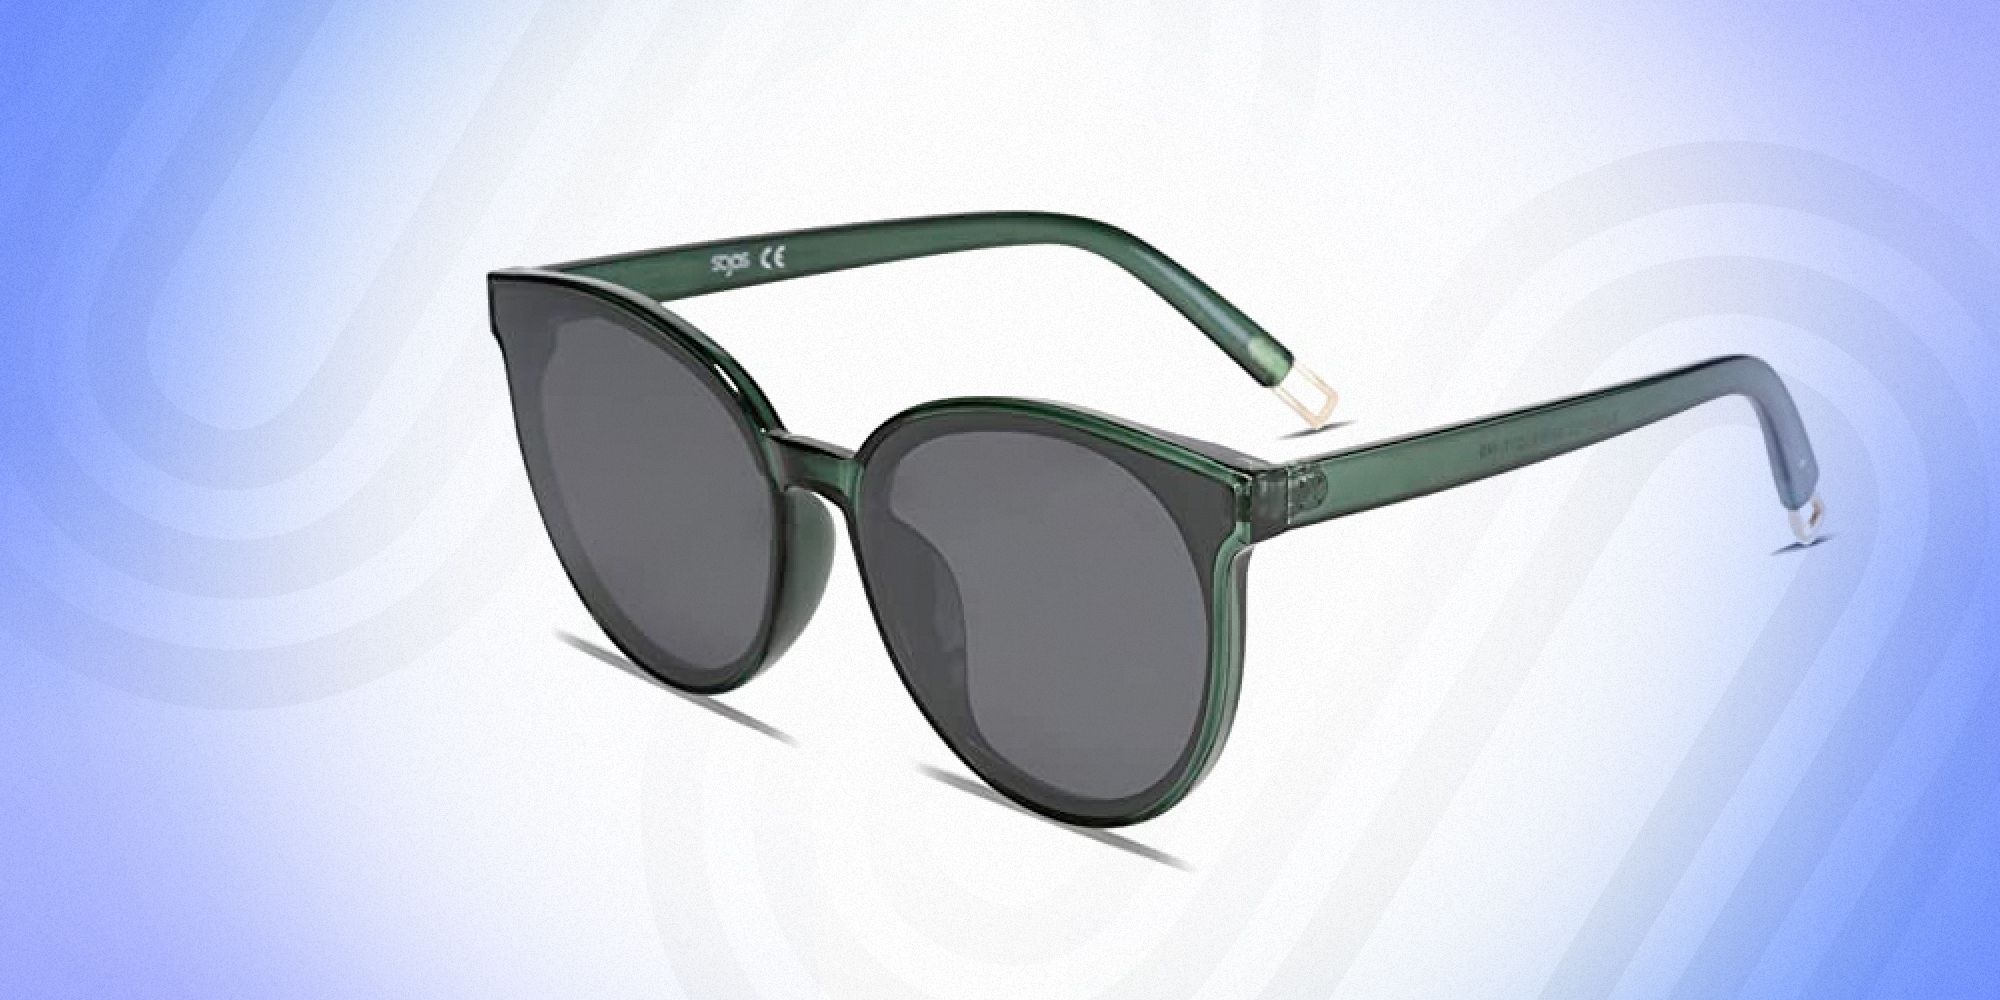 Buy Brown Tort Wayfarer Sunglasses Online - Accessorize India